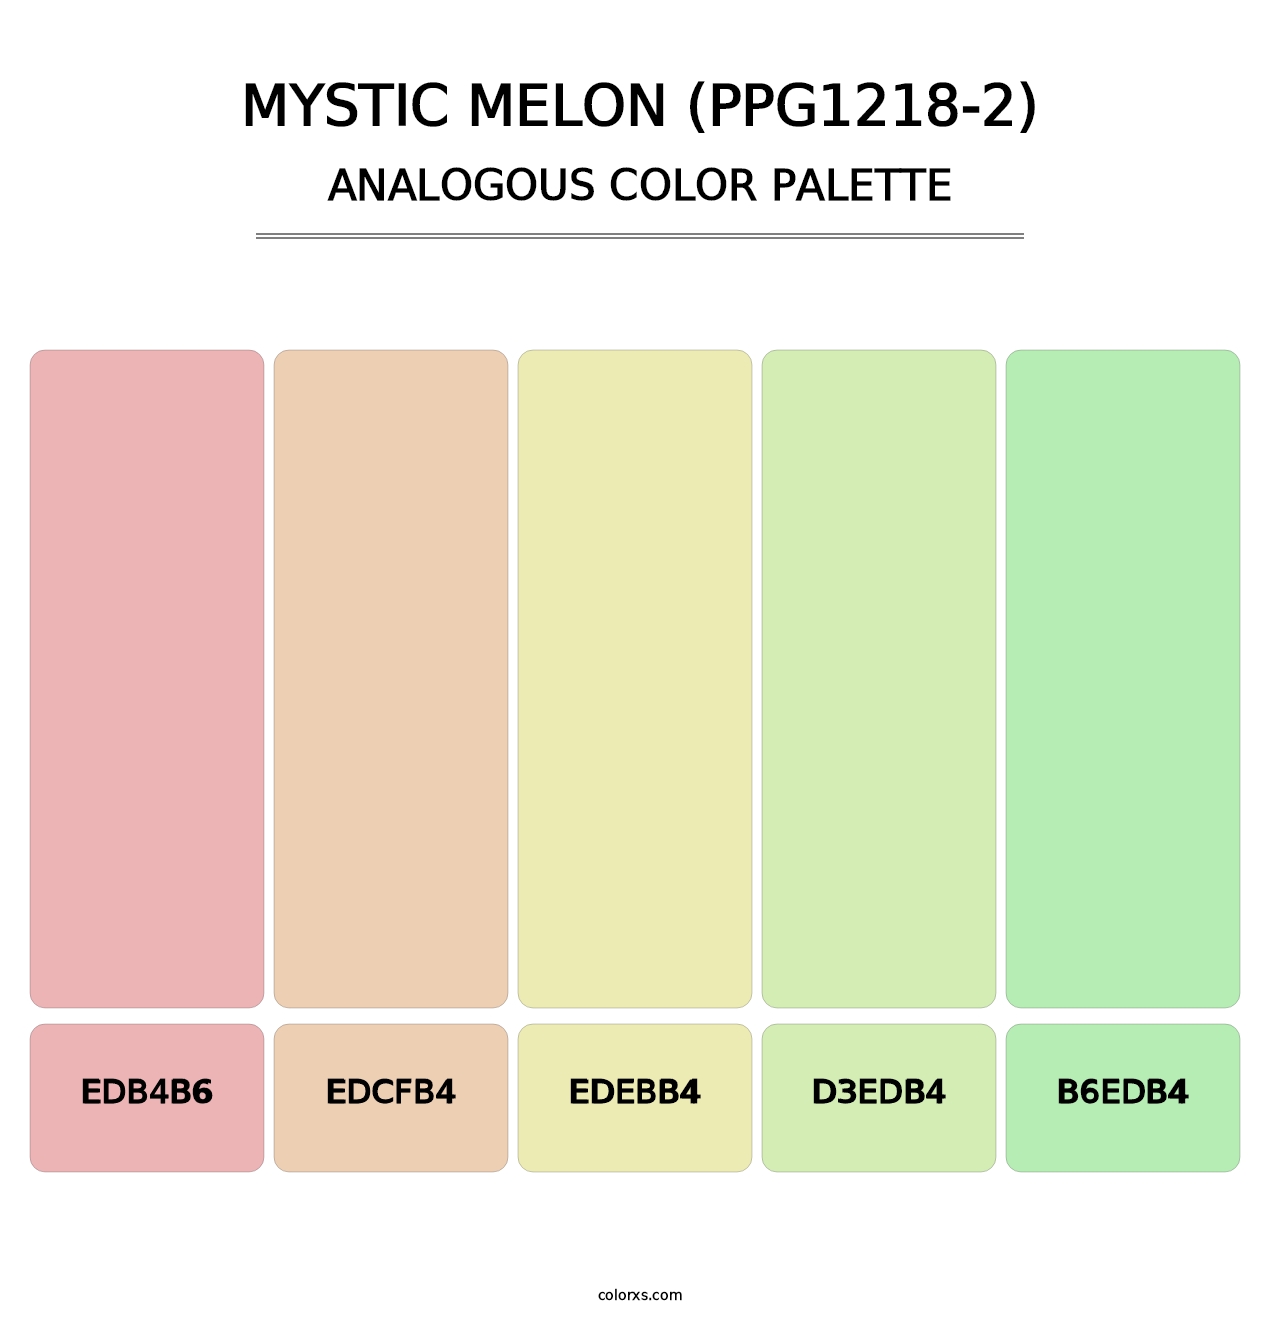 Mystic Melon (PPG1218-2) - Analogous Color Palette